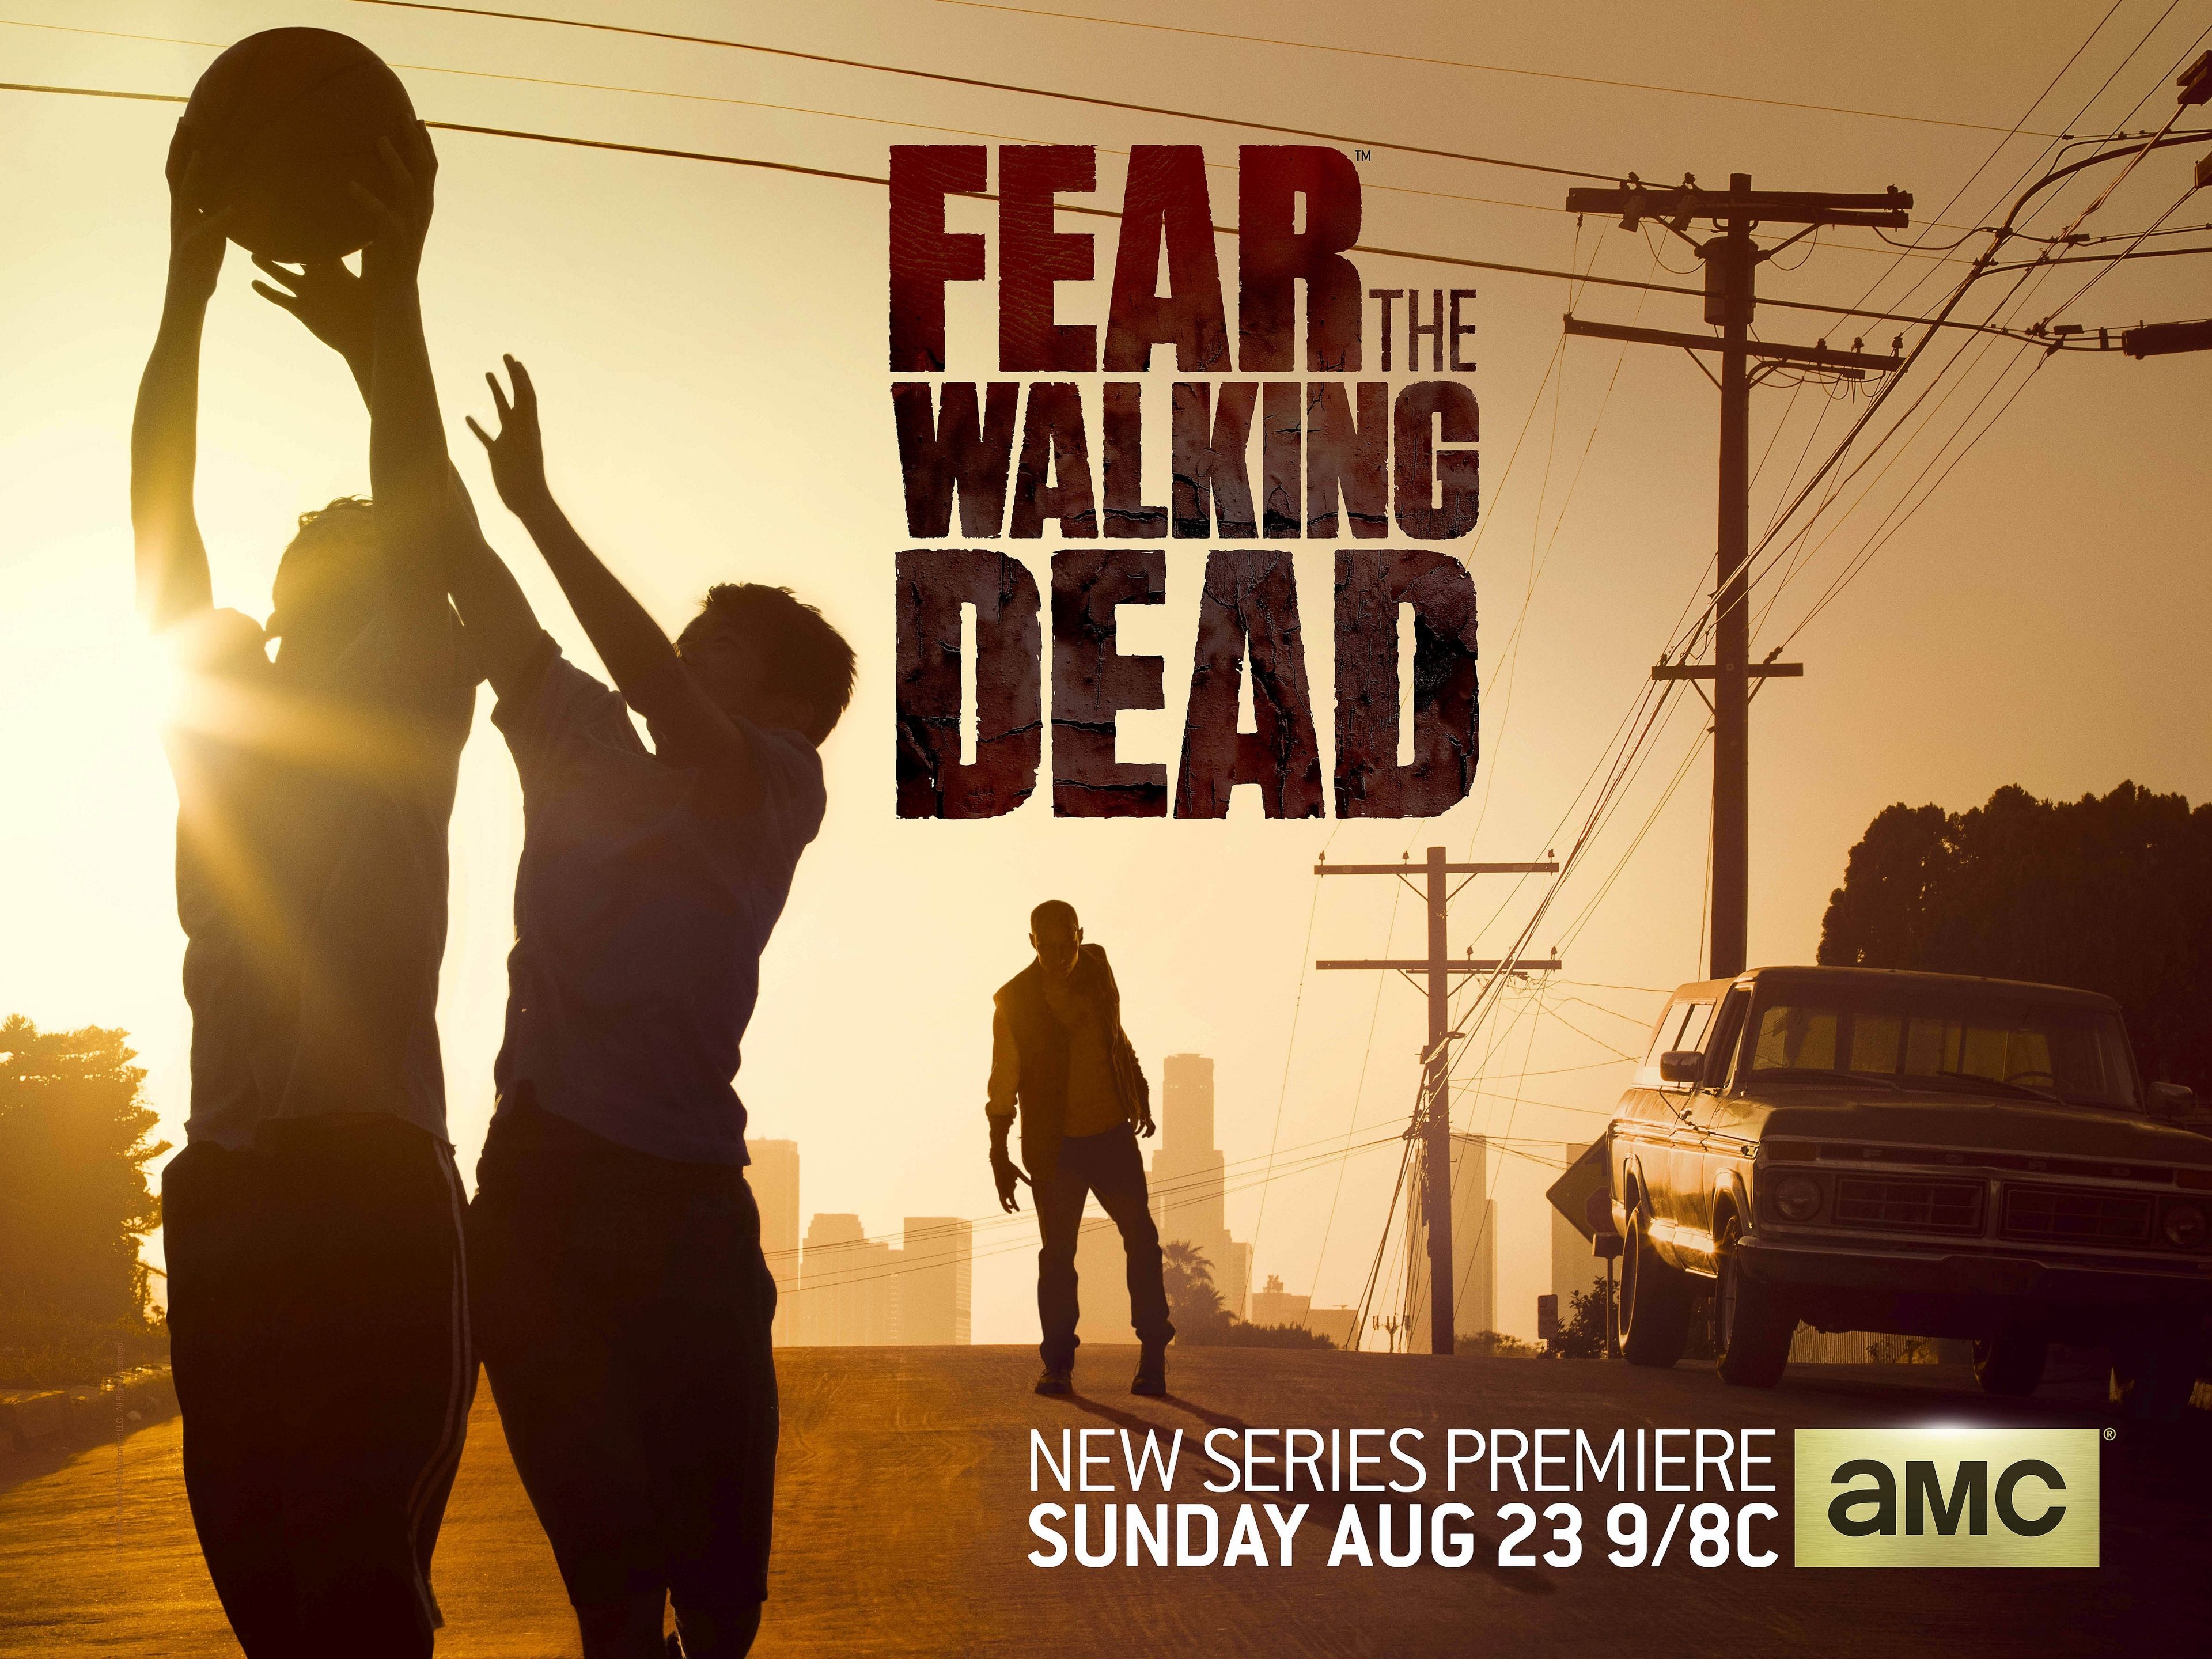 Fear the Walking Dead Season 1 4K UHD 4:3 3840x2880 Wallpaper. UHD